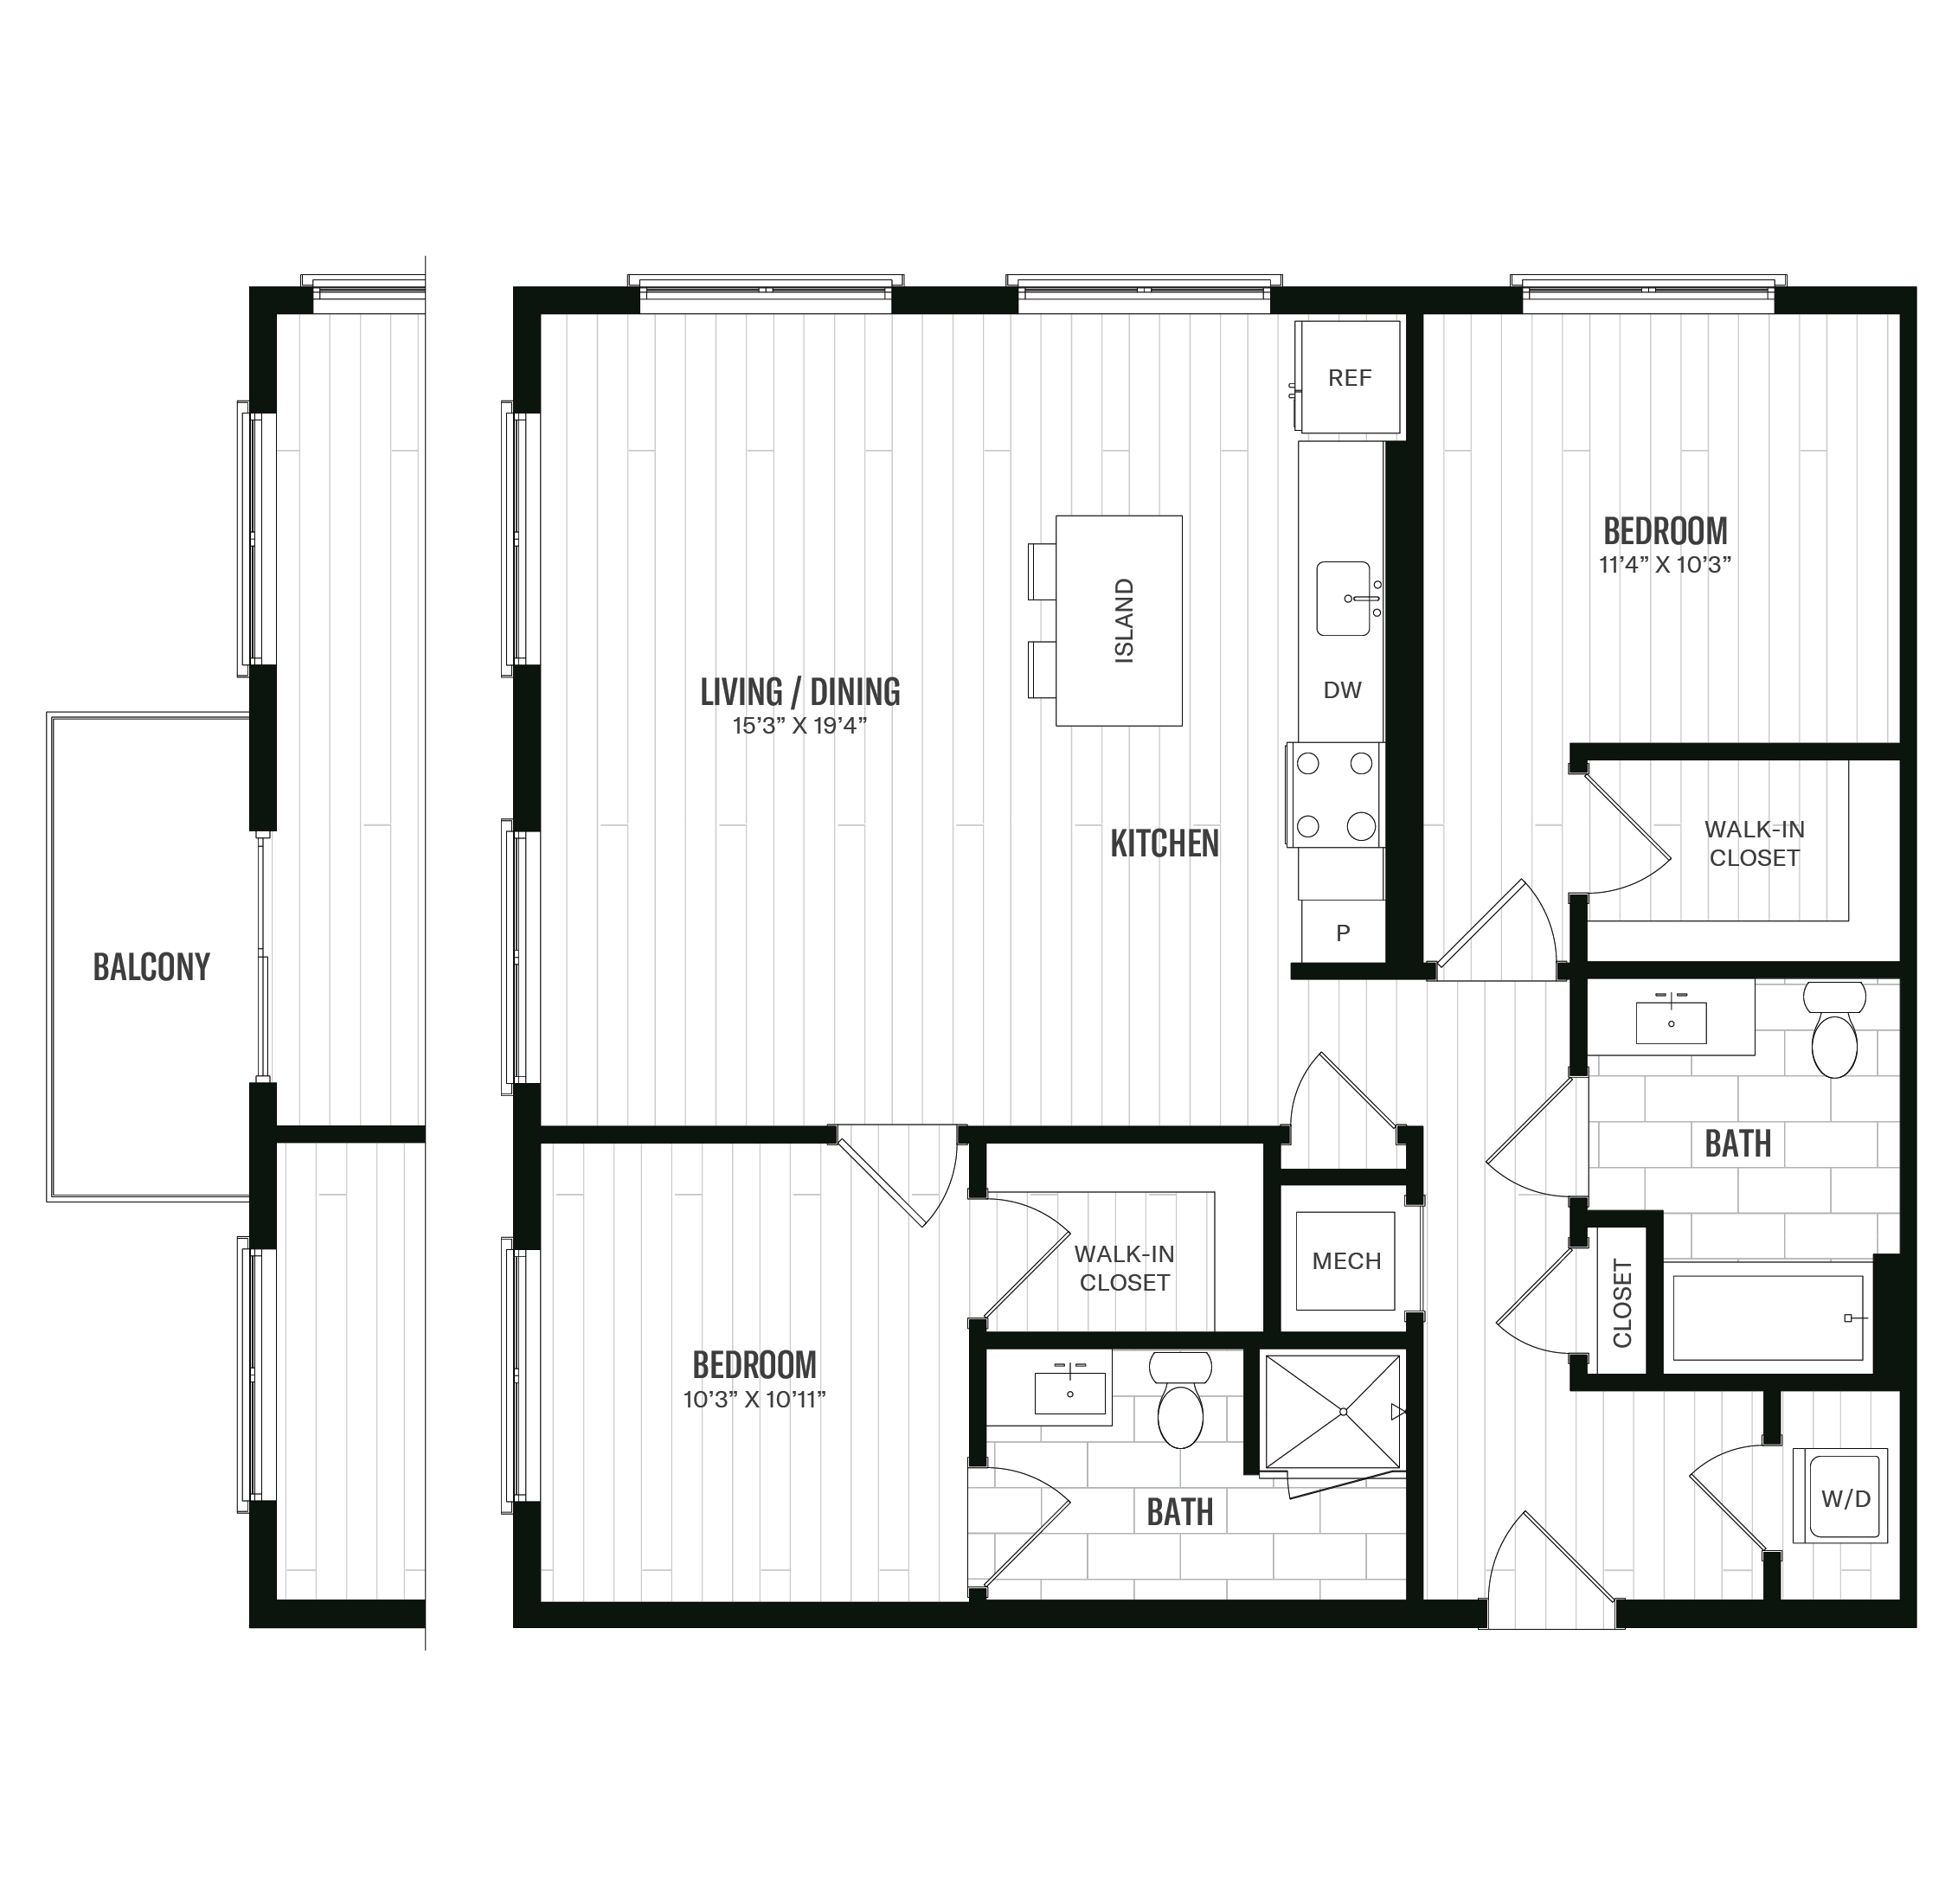 Floorplan image of unit 563